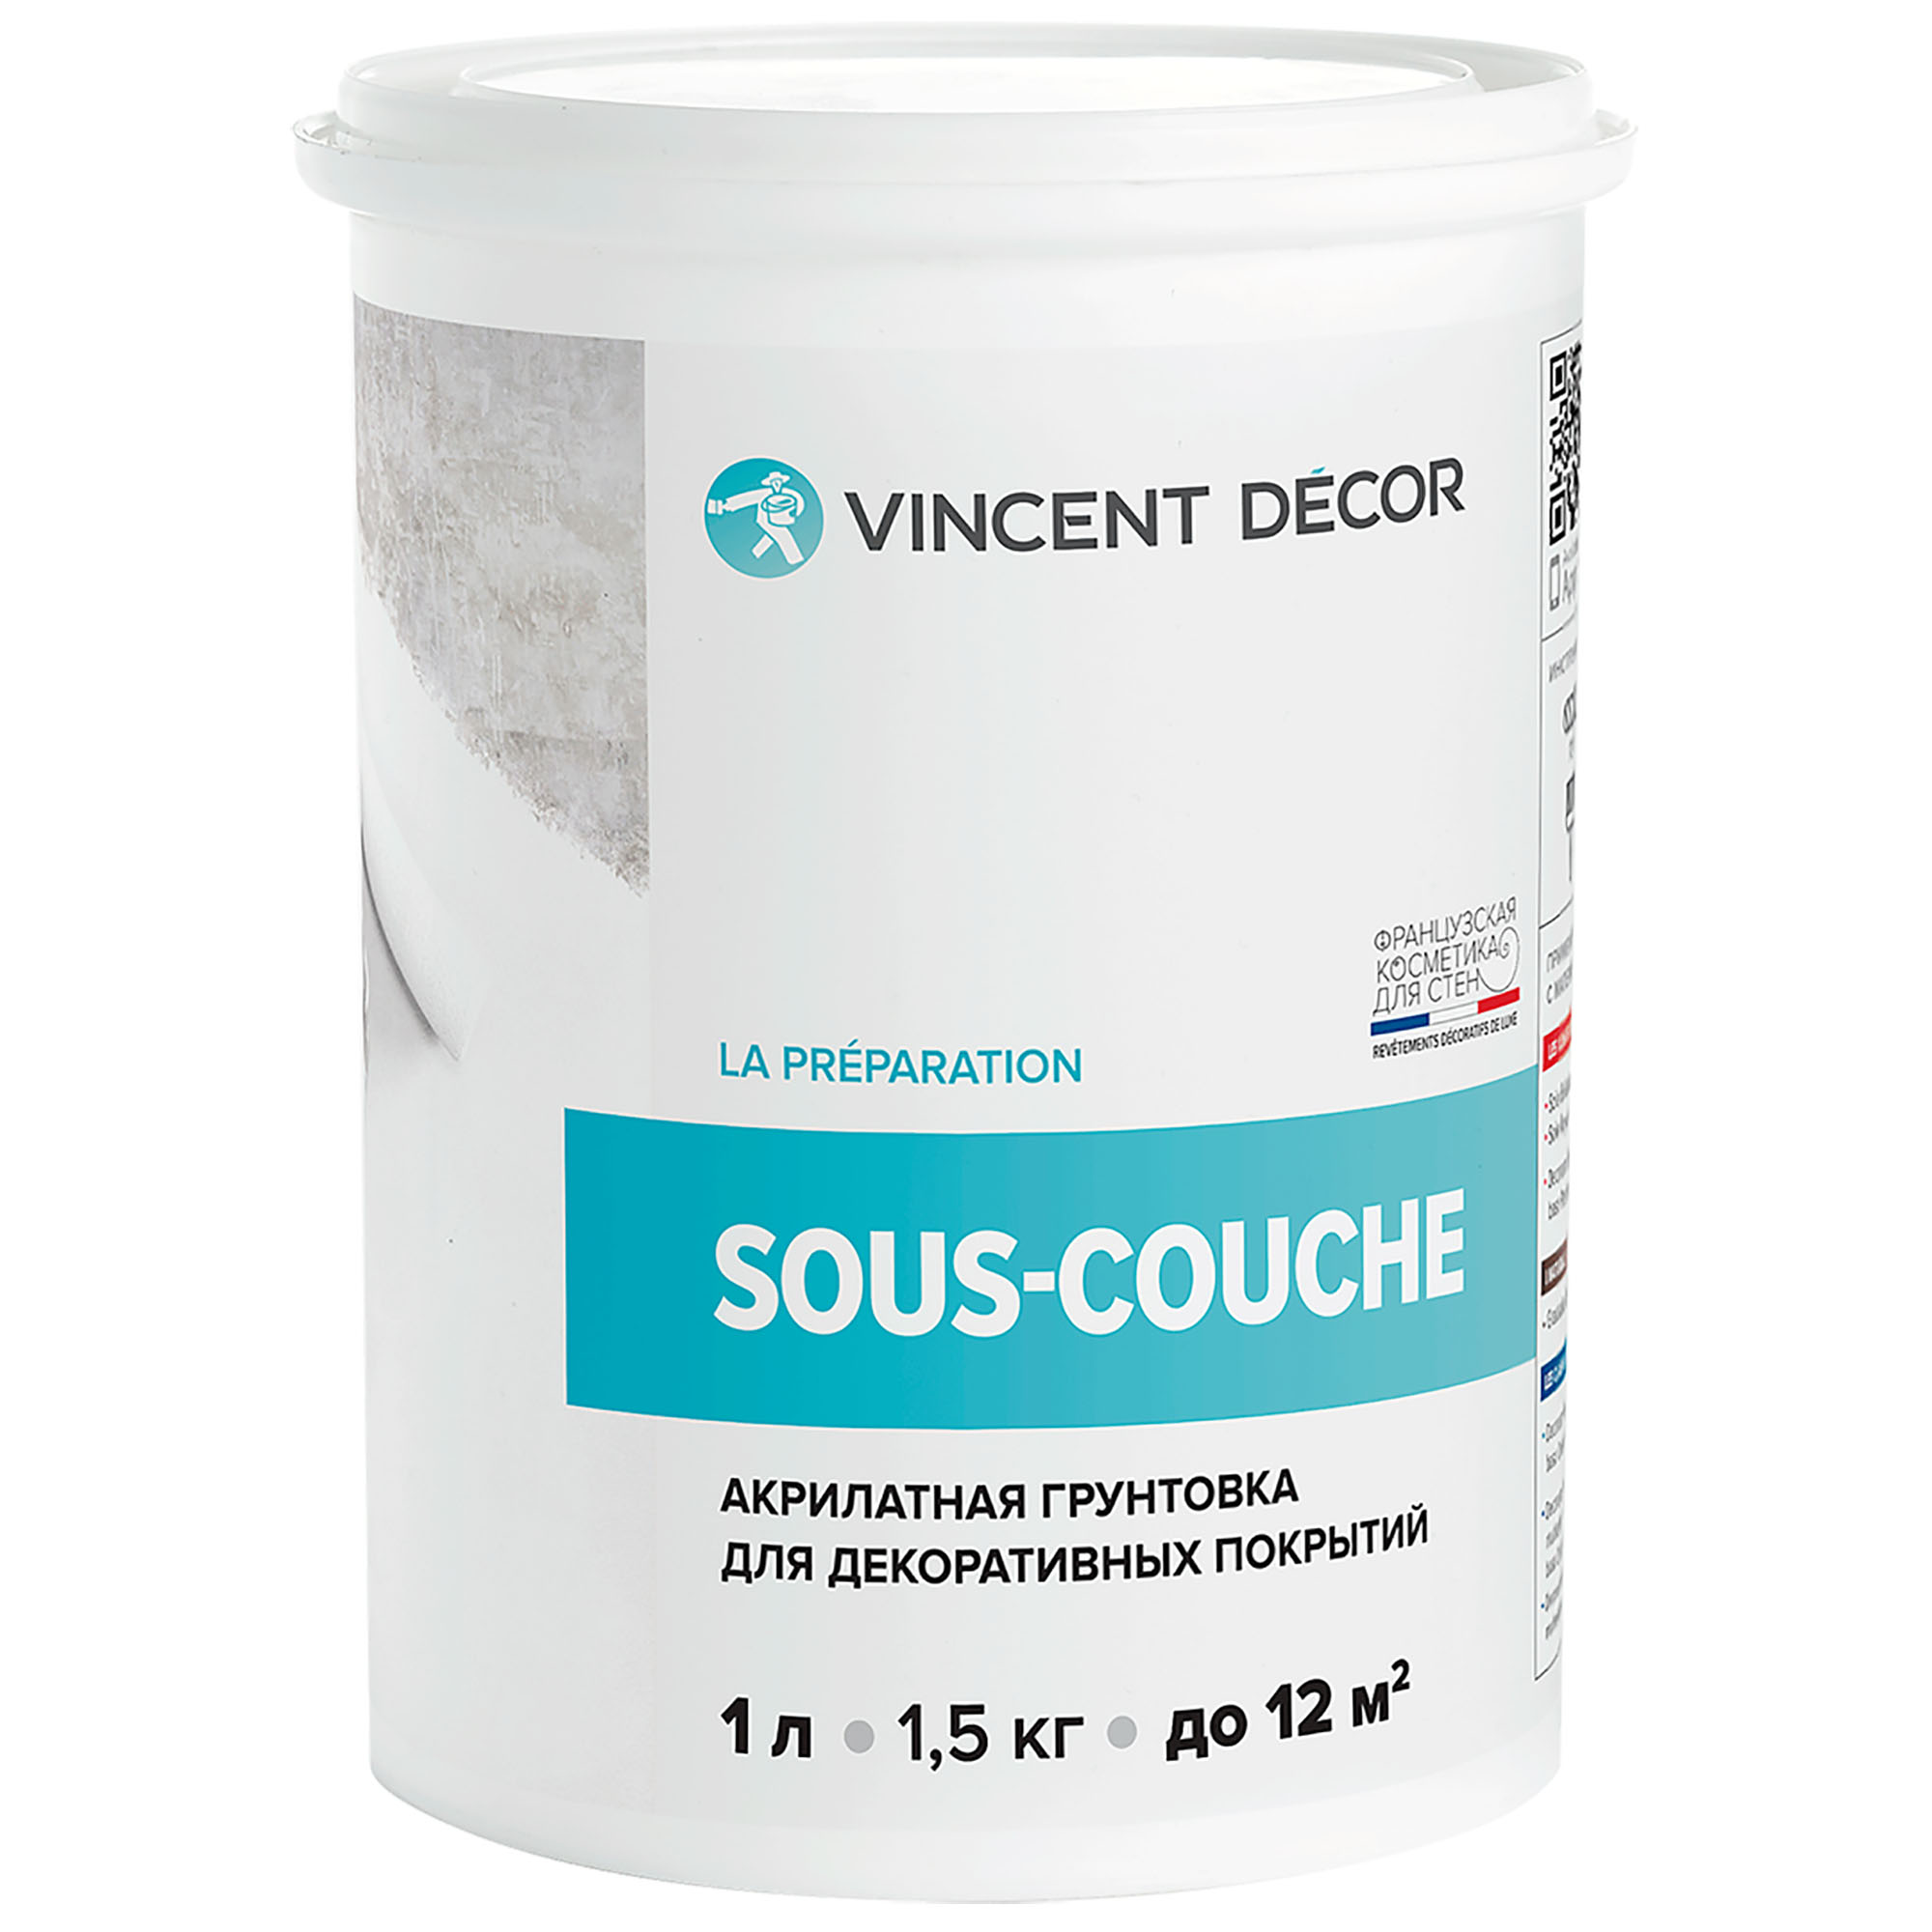 Грунтовка для декоративных покрытий Vincent Decor Sous-couche 1 л грунтовка изольту 0 48 кг vincent